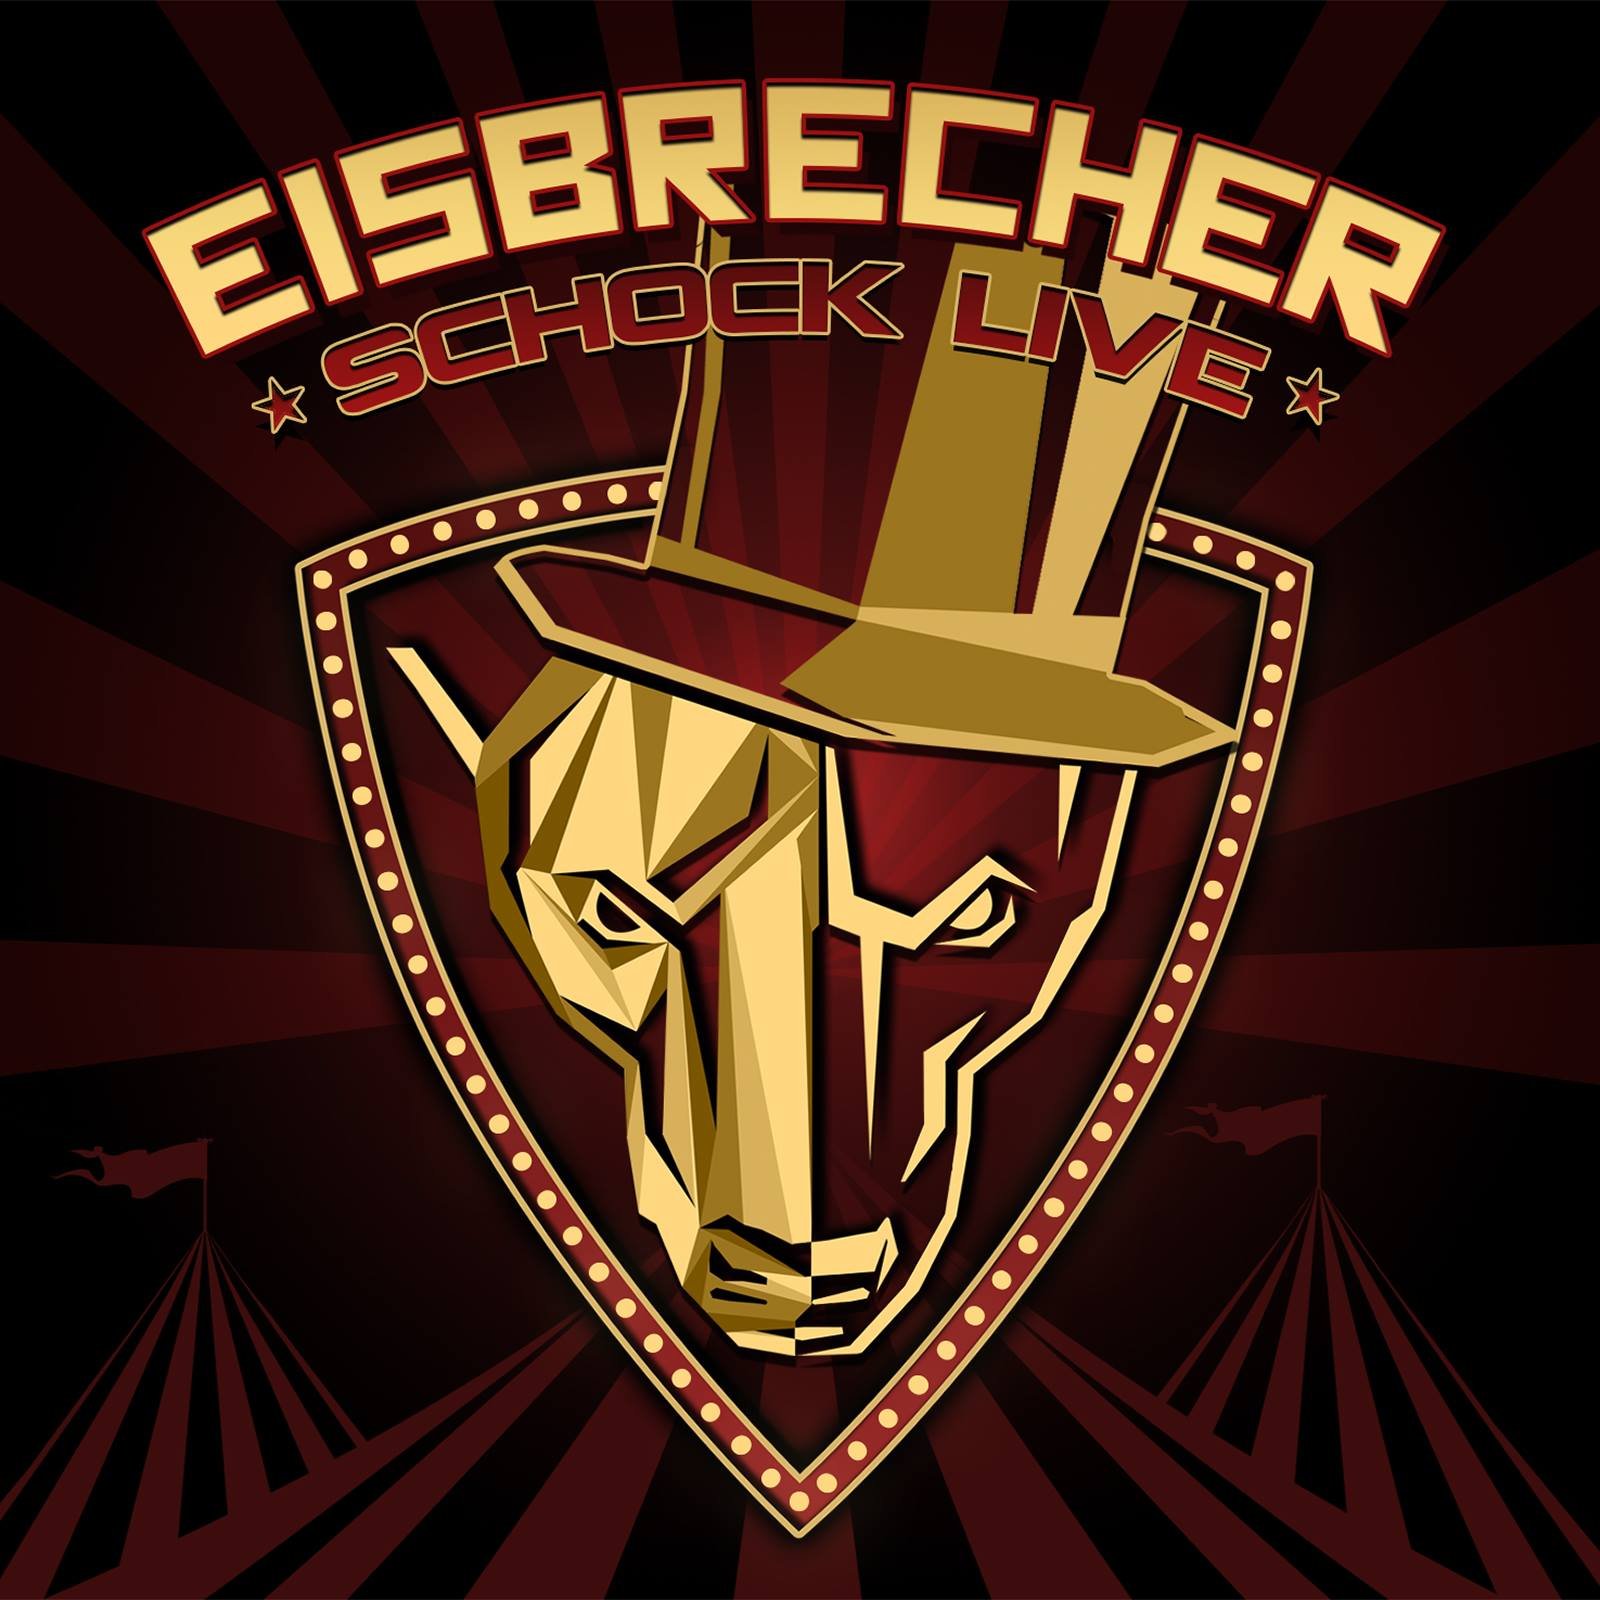 Eisbrecher rot wie liebe. Айсбрехер группа. Eisbrecher лого. Eisbrecher Shock обложка. Eisbrecher логотип группы.